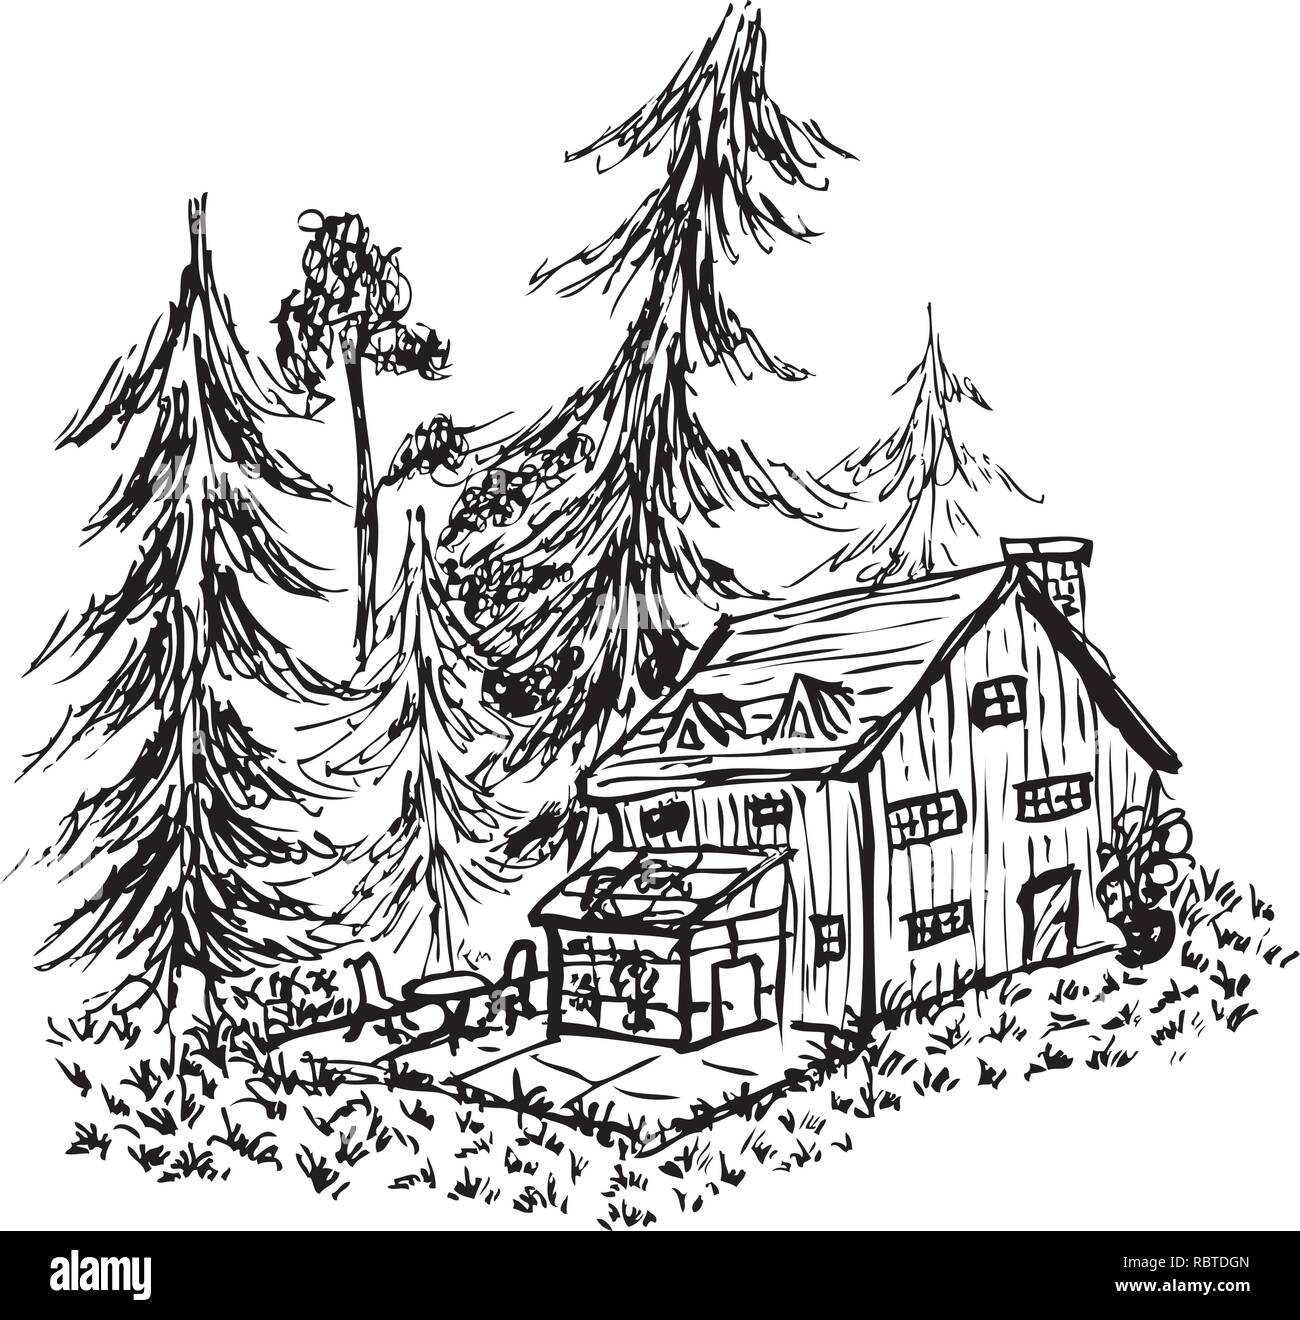 Croquis d'un lodge à une clairière forestière par jziprian Illustration de Vecteur